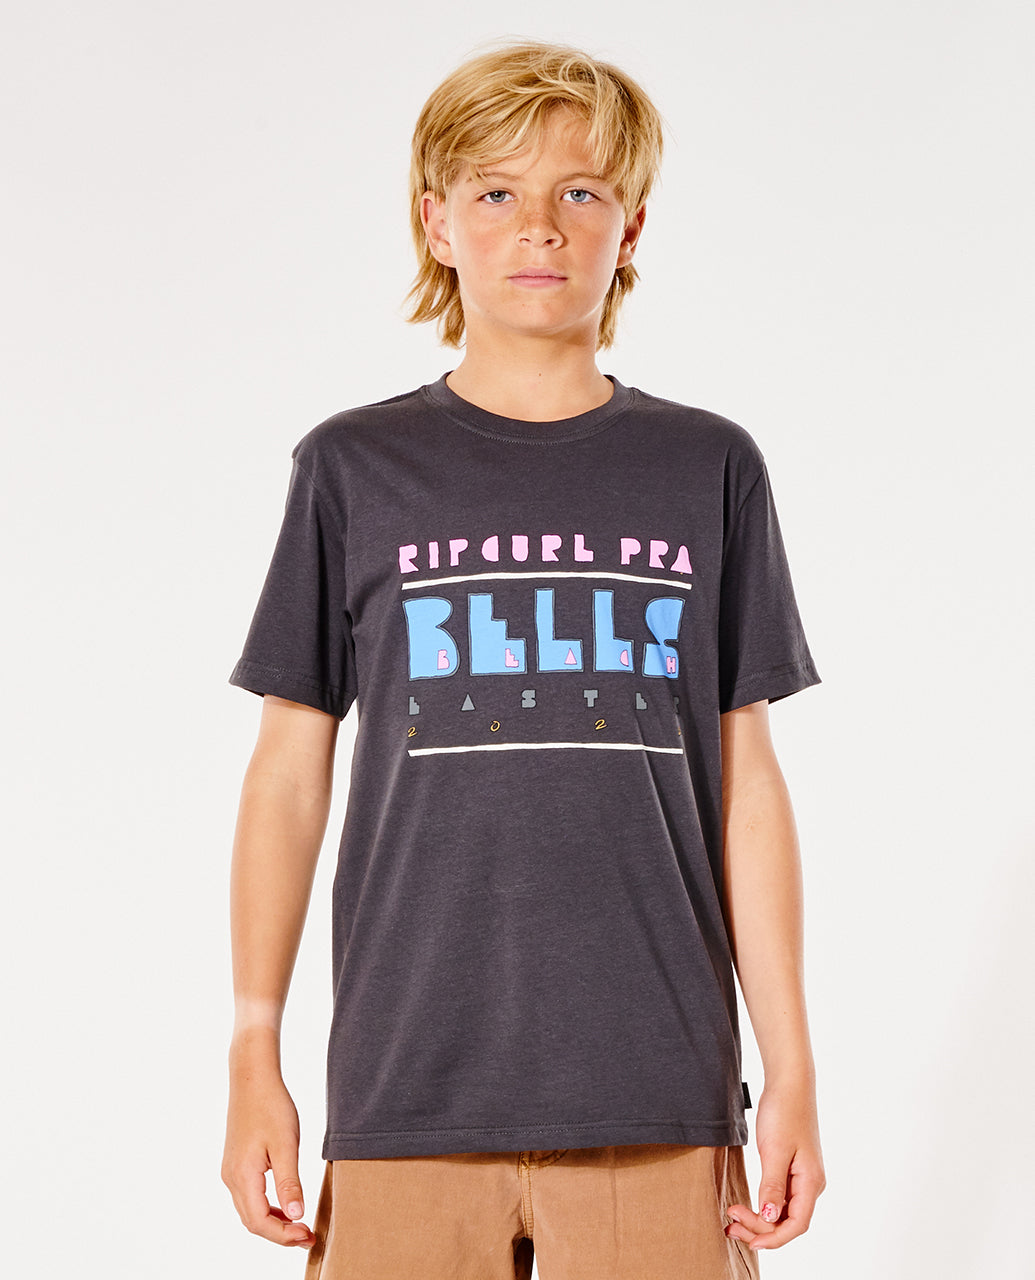 BELLS STACK Short sleeve T-shirt - BOY